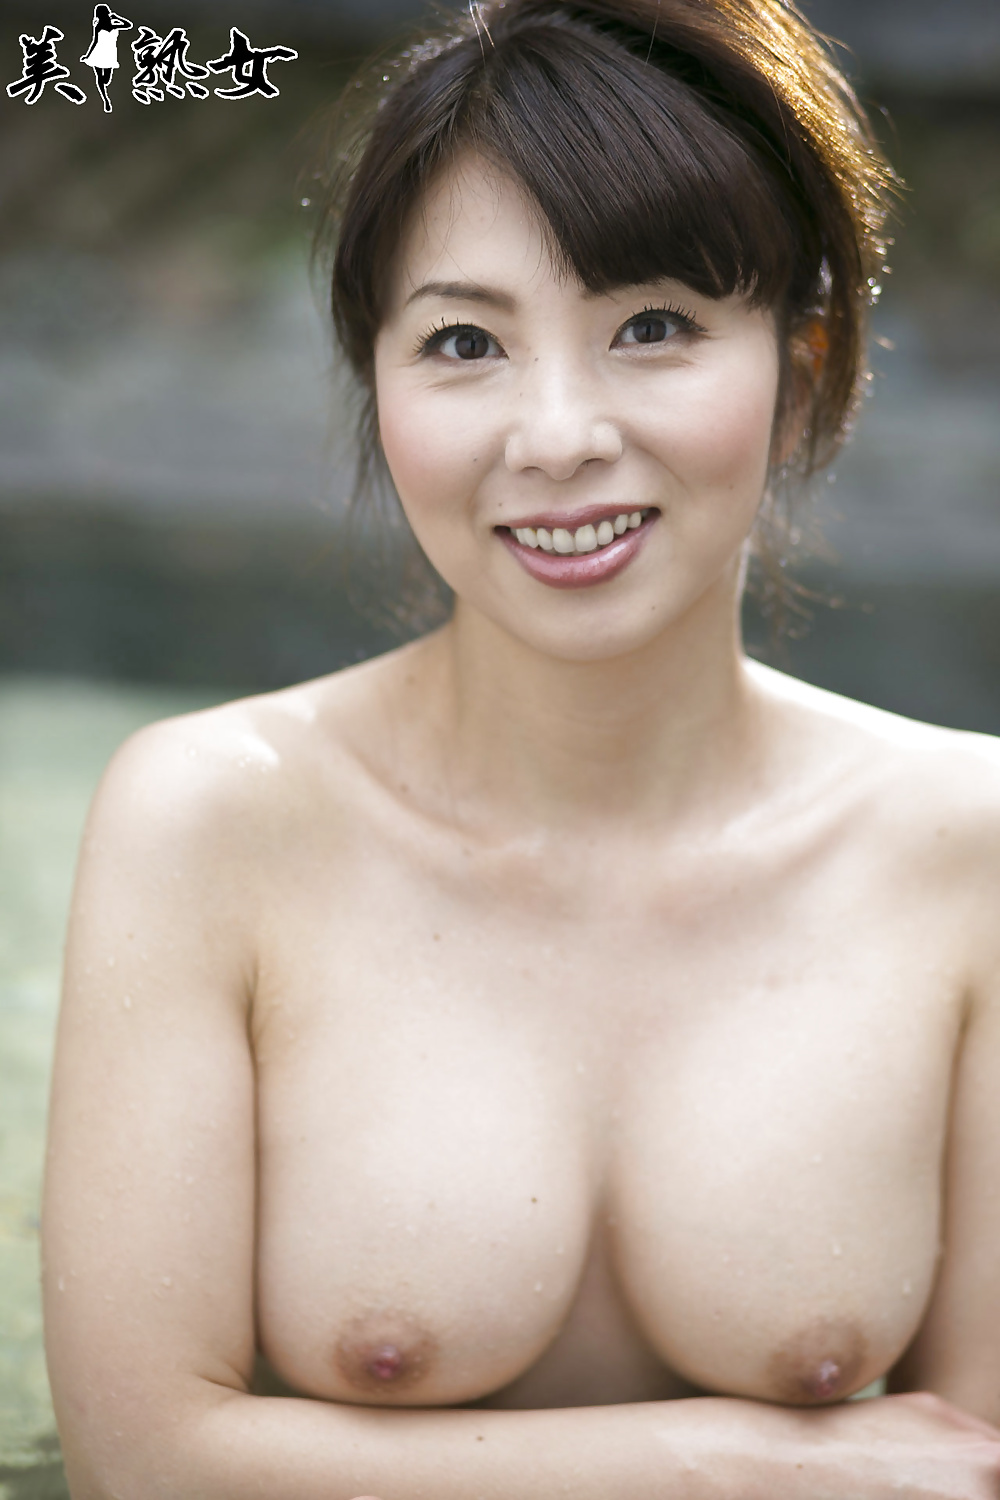 Sexy Kimika Ichijo Milf 1 Porn Pictures Xxx Photos Sex Images 1854700 Page 2 Pictoa